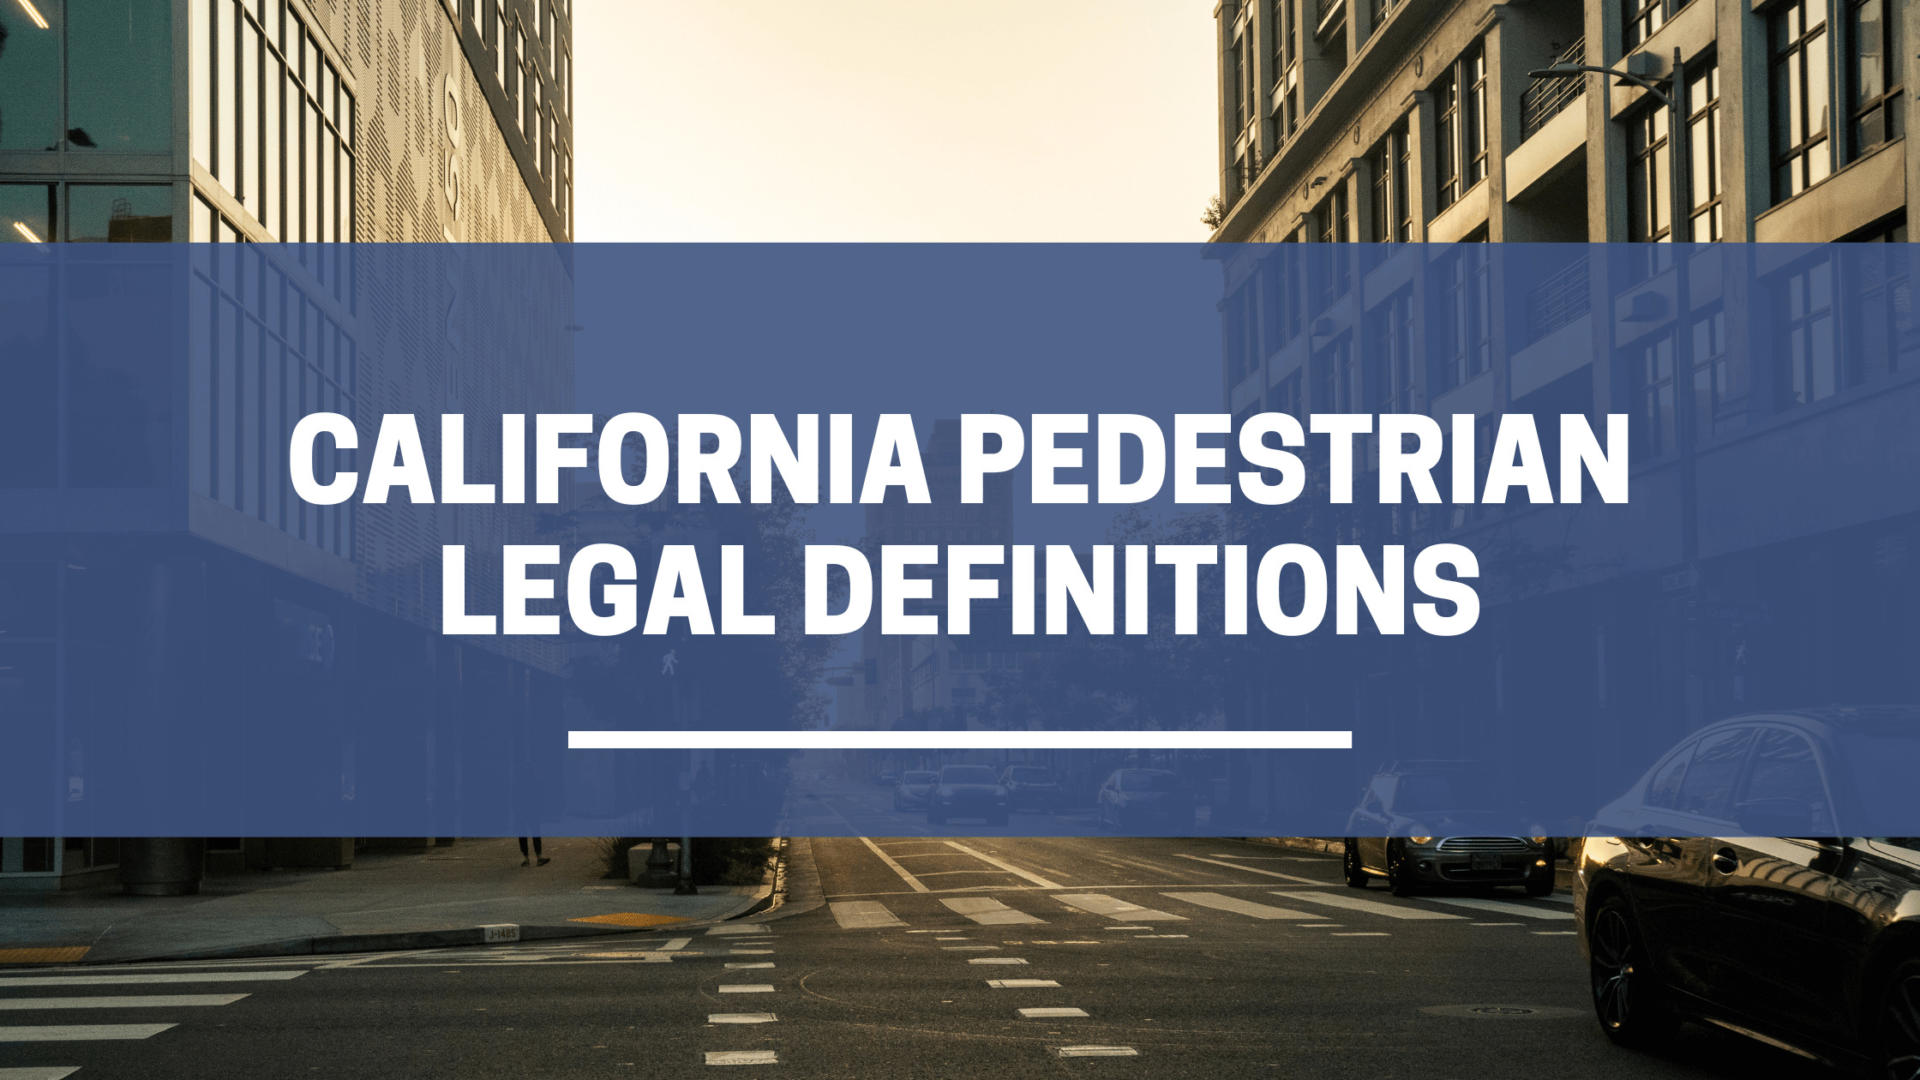 Definiciones legales de peatones de California